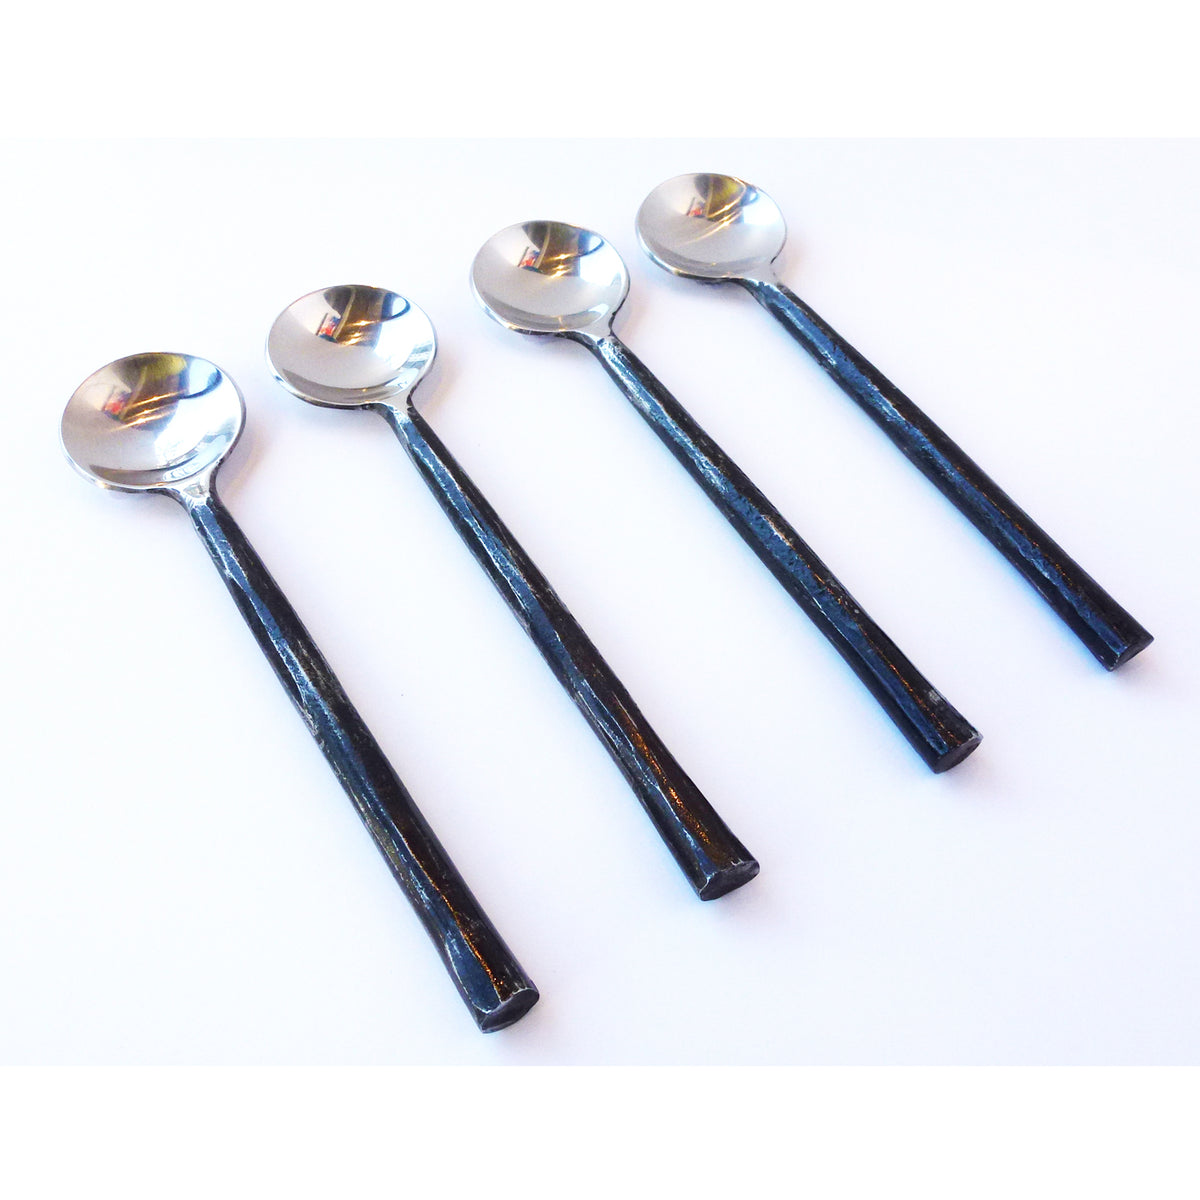 Abbott - Rustic Small Spoon Set